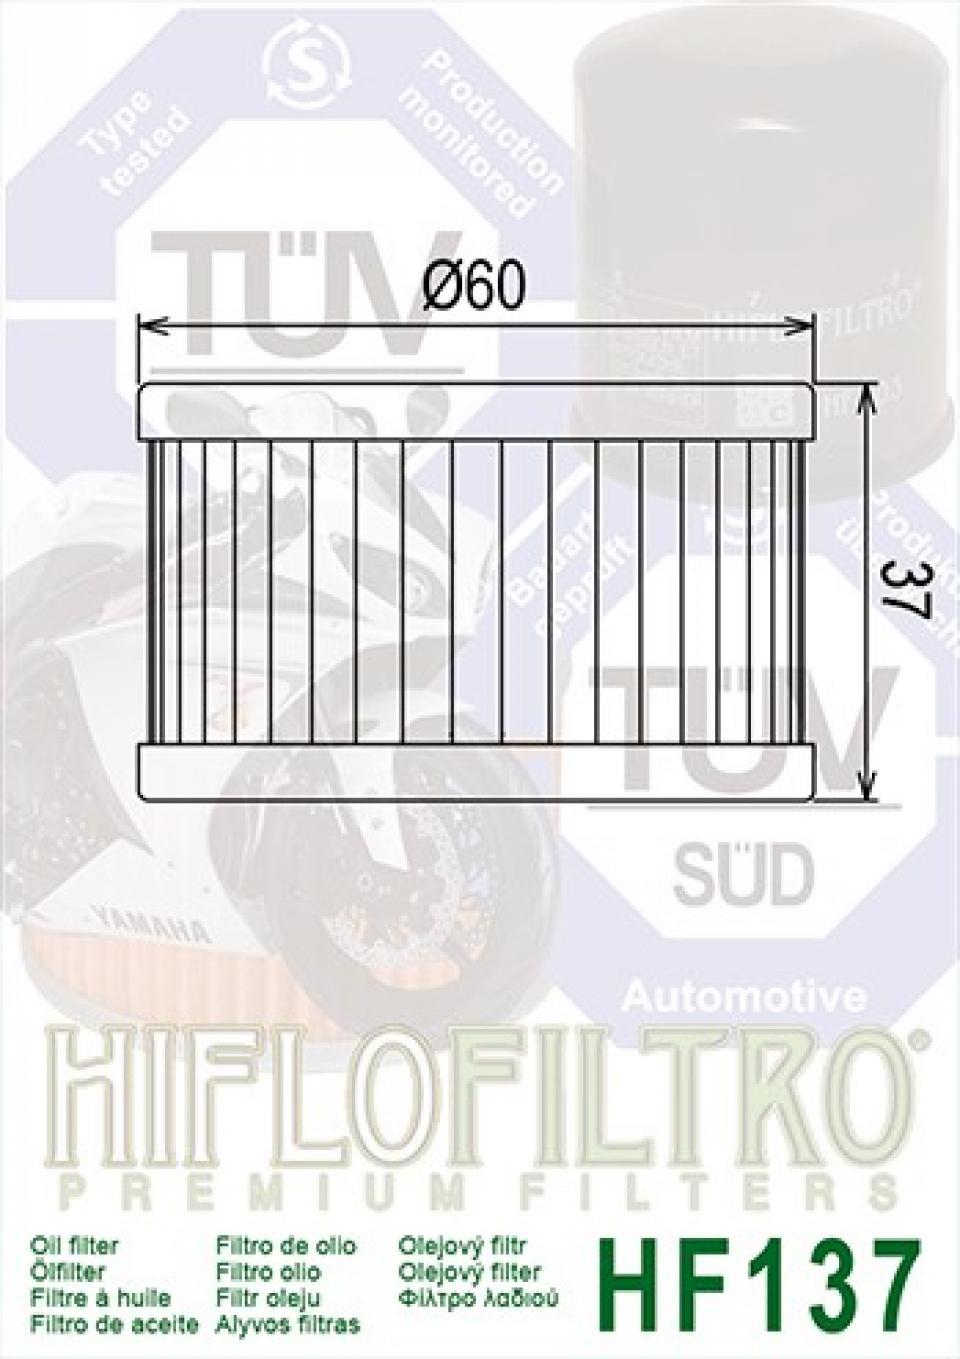 Filtre à huile Hiflofiltro pour Moto Suzuki 500 DR 1981 à 1983 HF137 16510-37440 16510-37450 Neuf